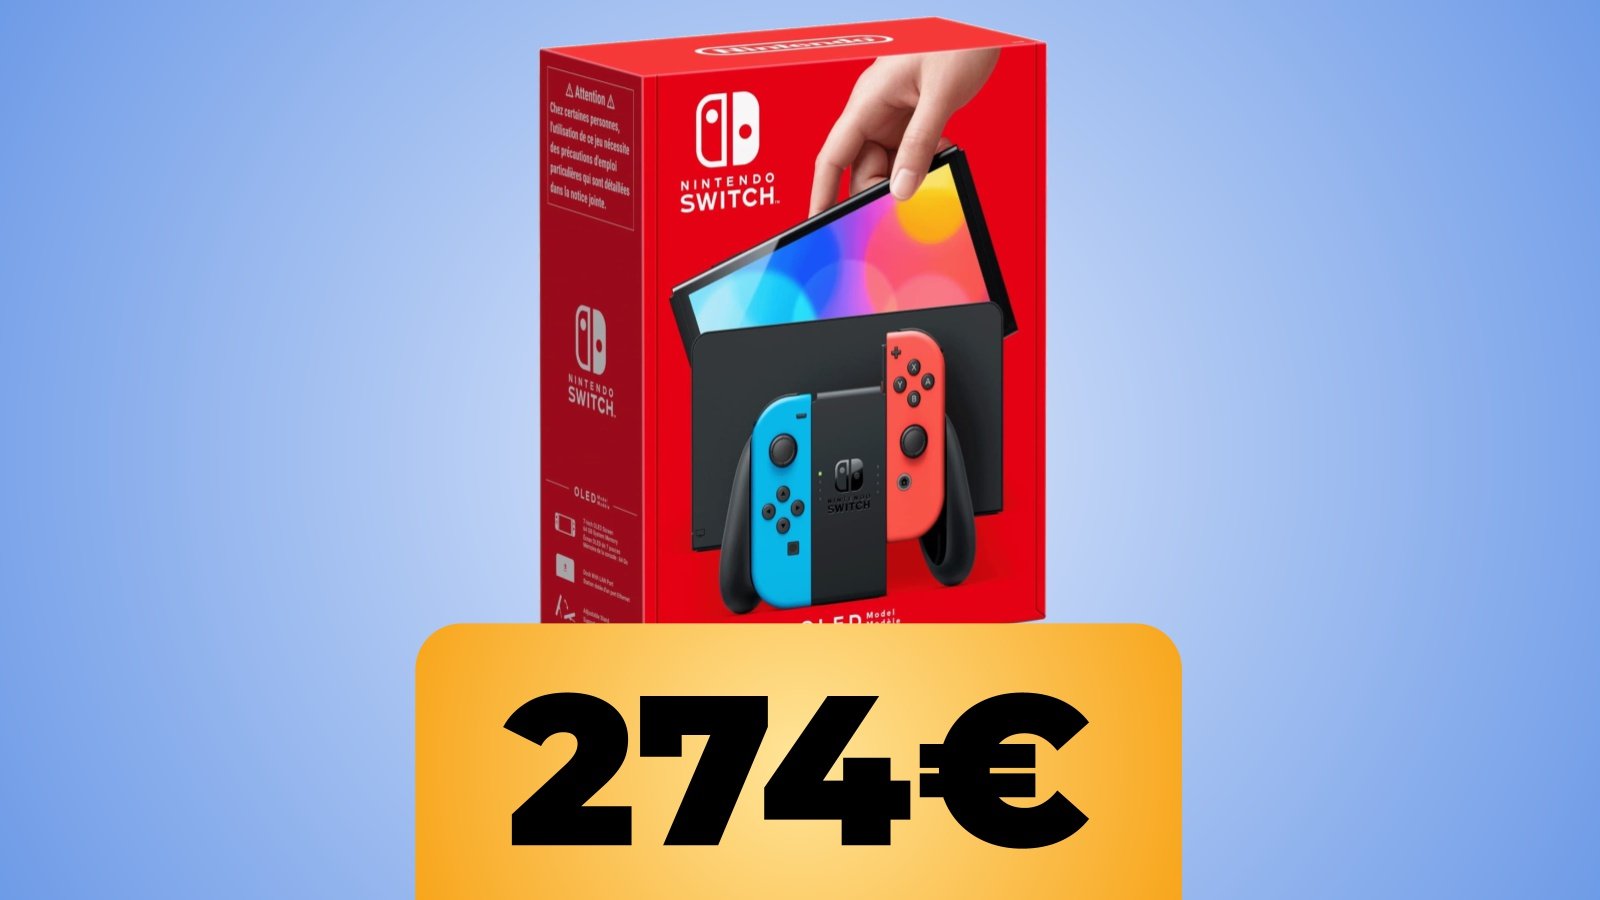 La confezione di Nintendo Switch OLED e il prezzo su Amazon